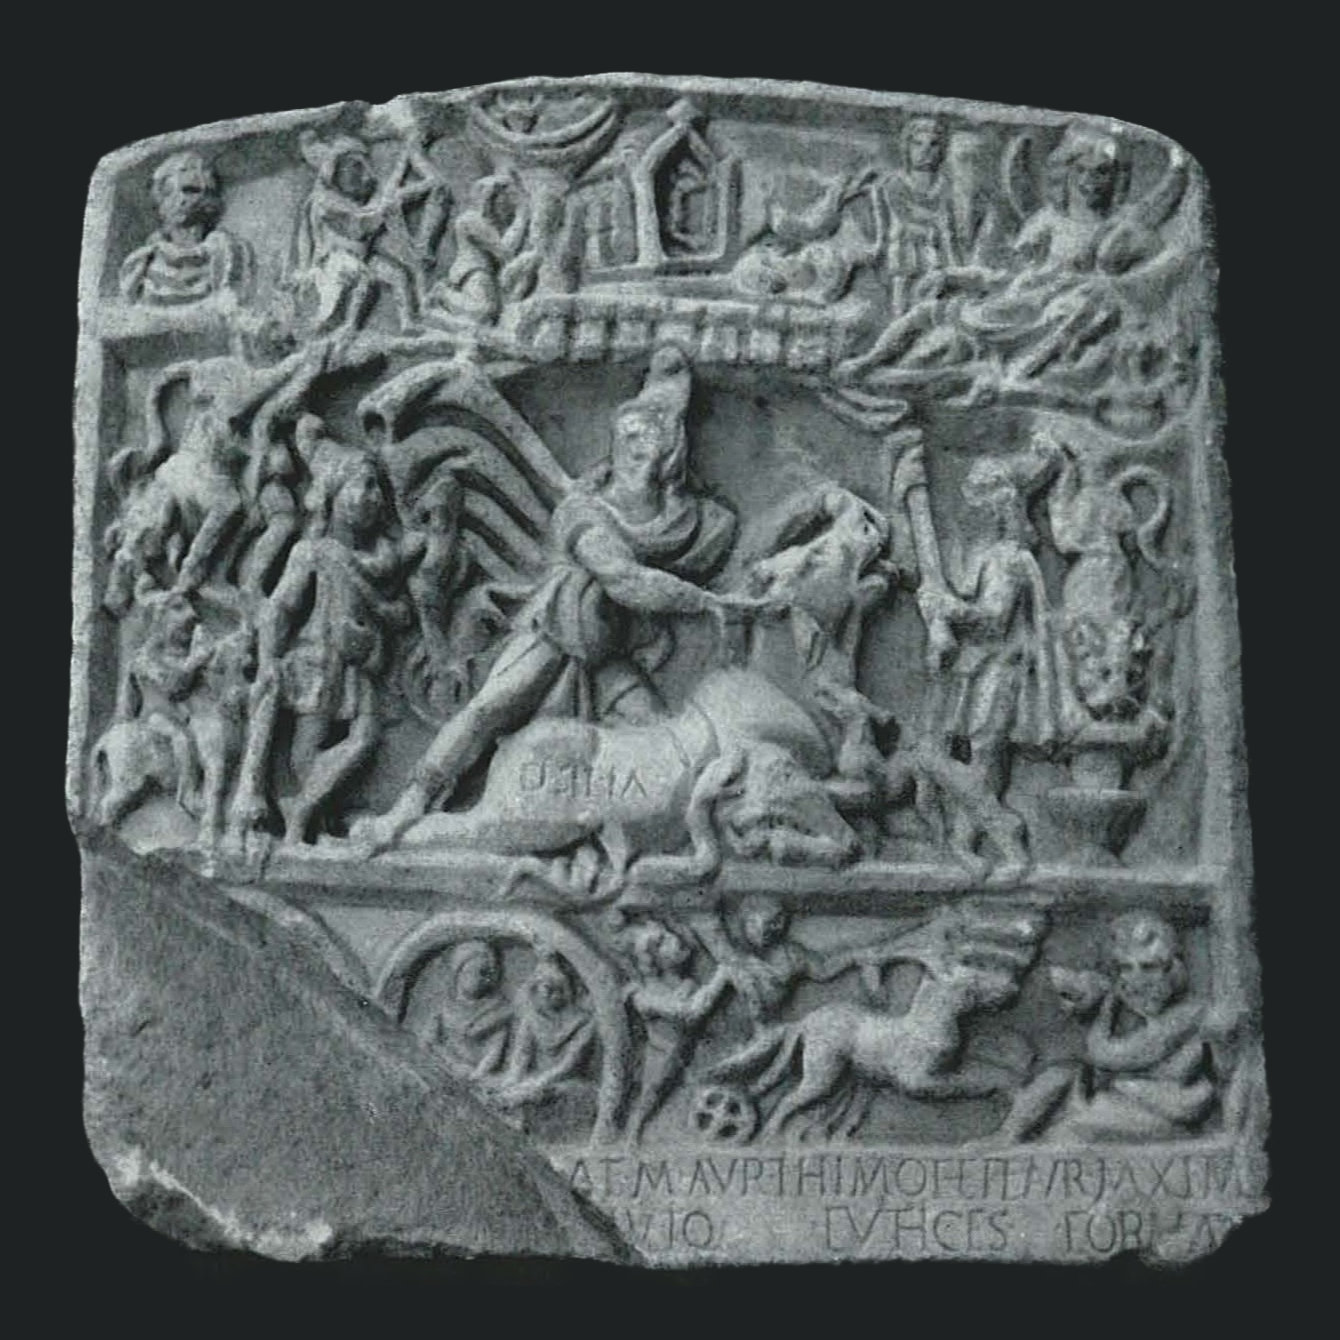 Tauroctony relief of Apulum (Alba Iulia)